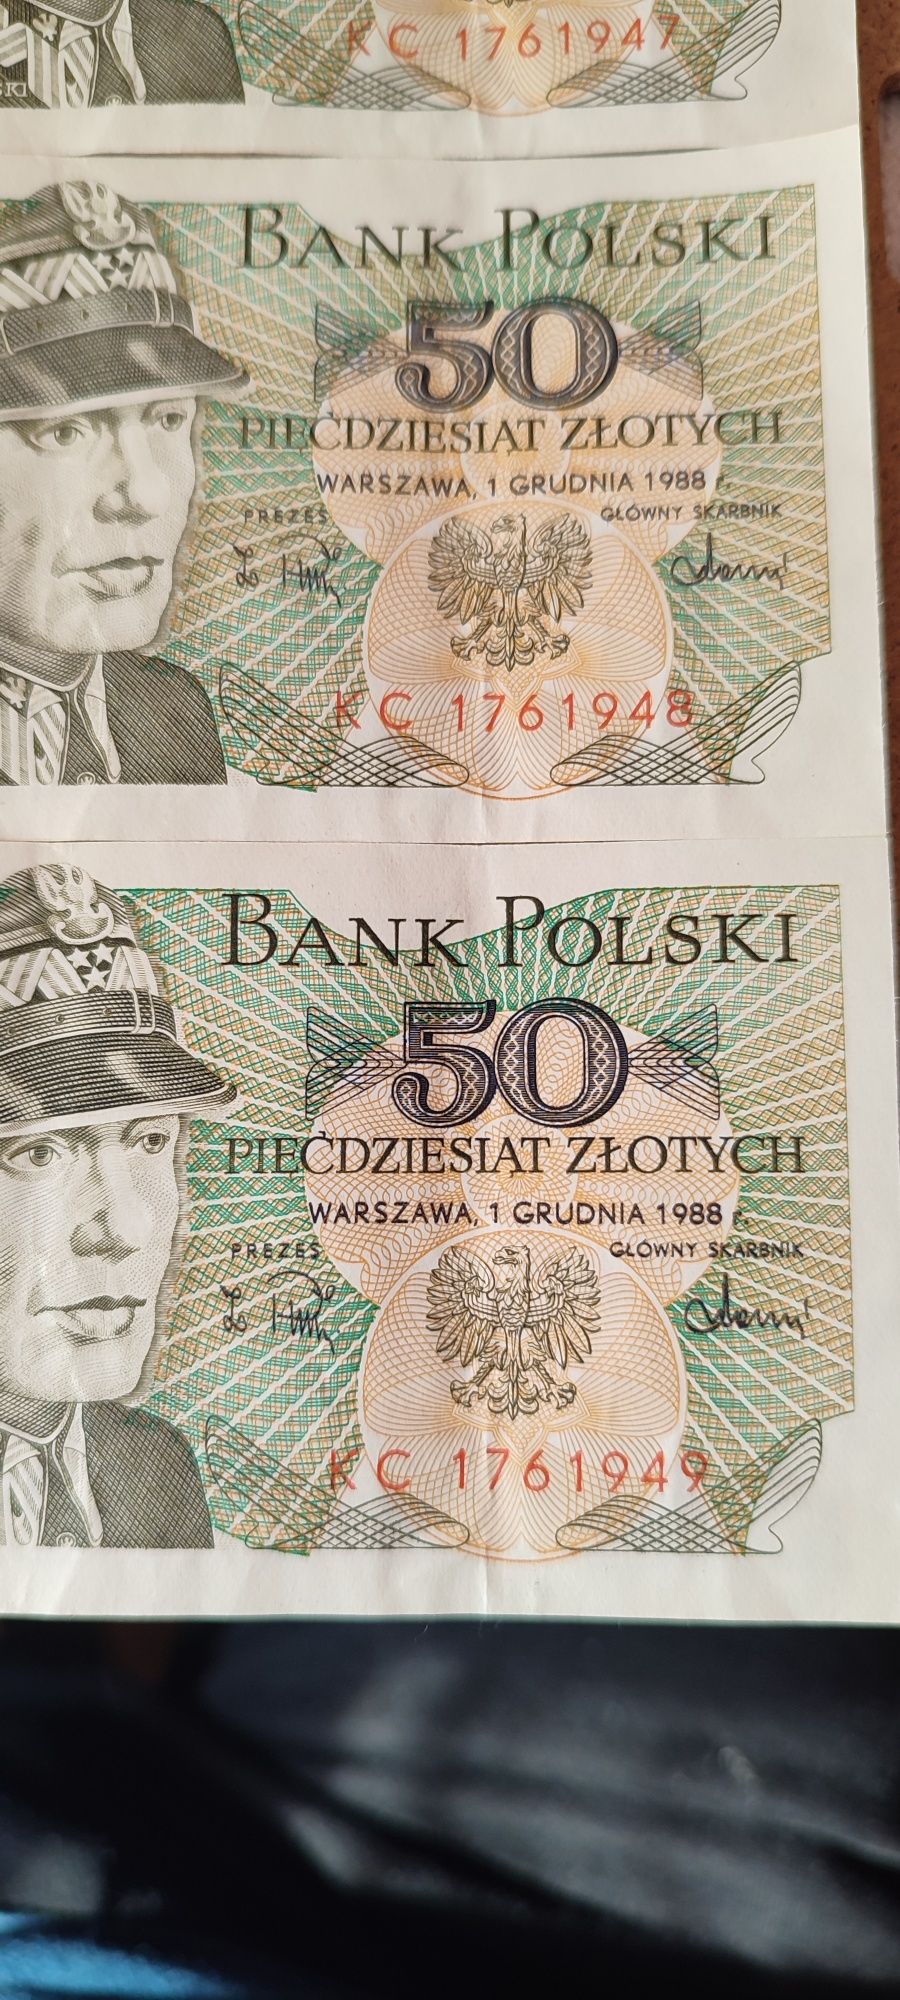 4 banknoty wartości każdy po 50zł z roku 1988 - 1 grudnia.